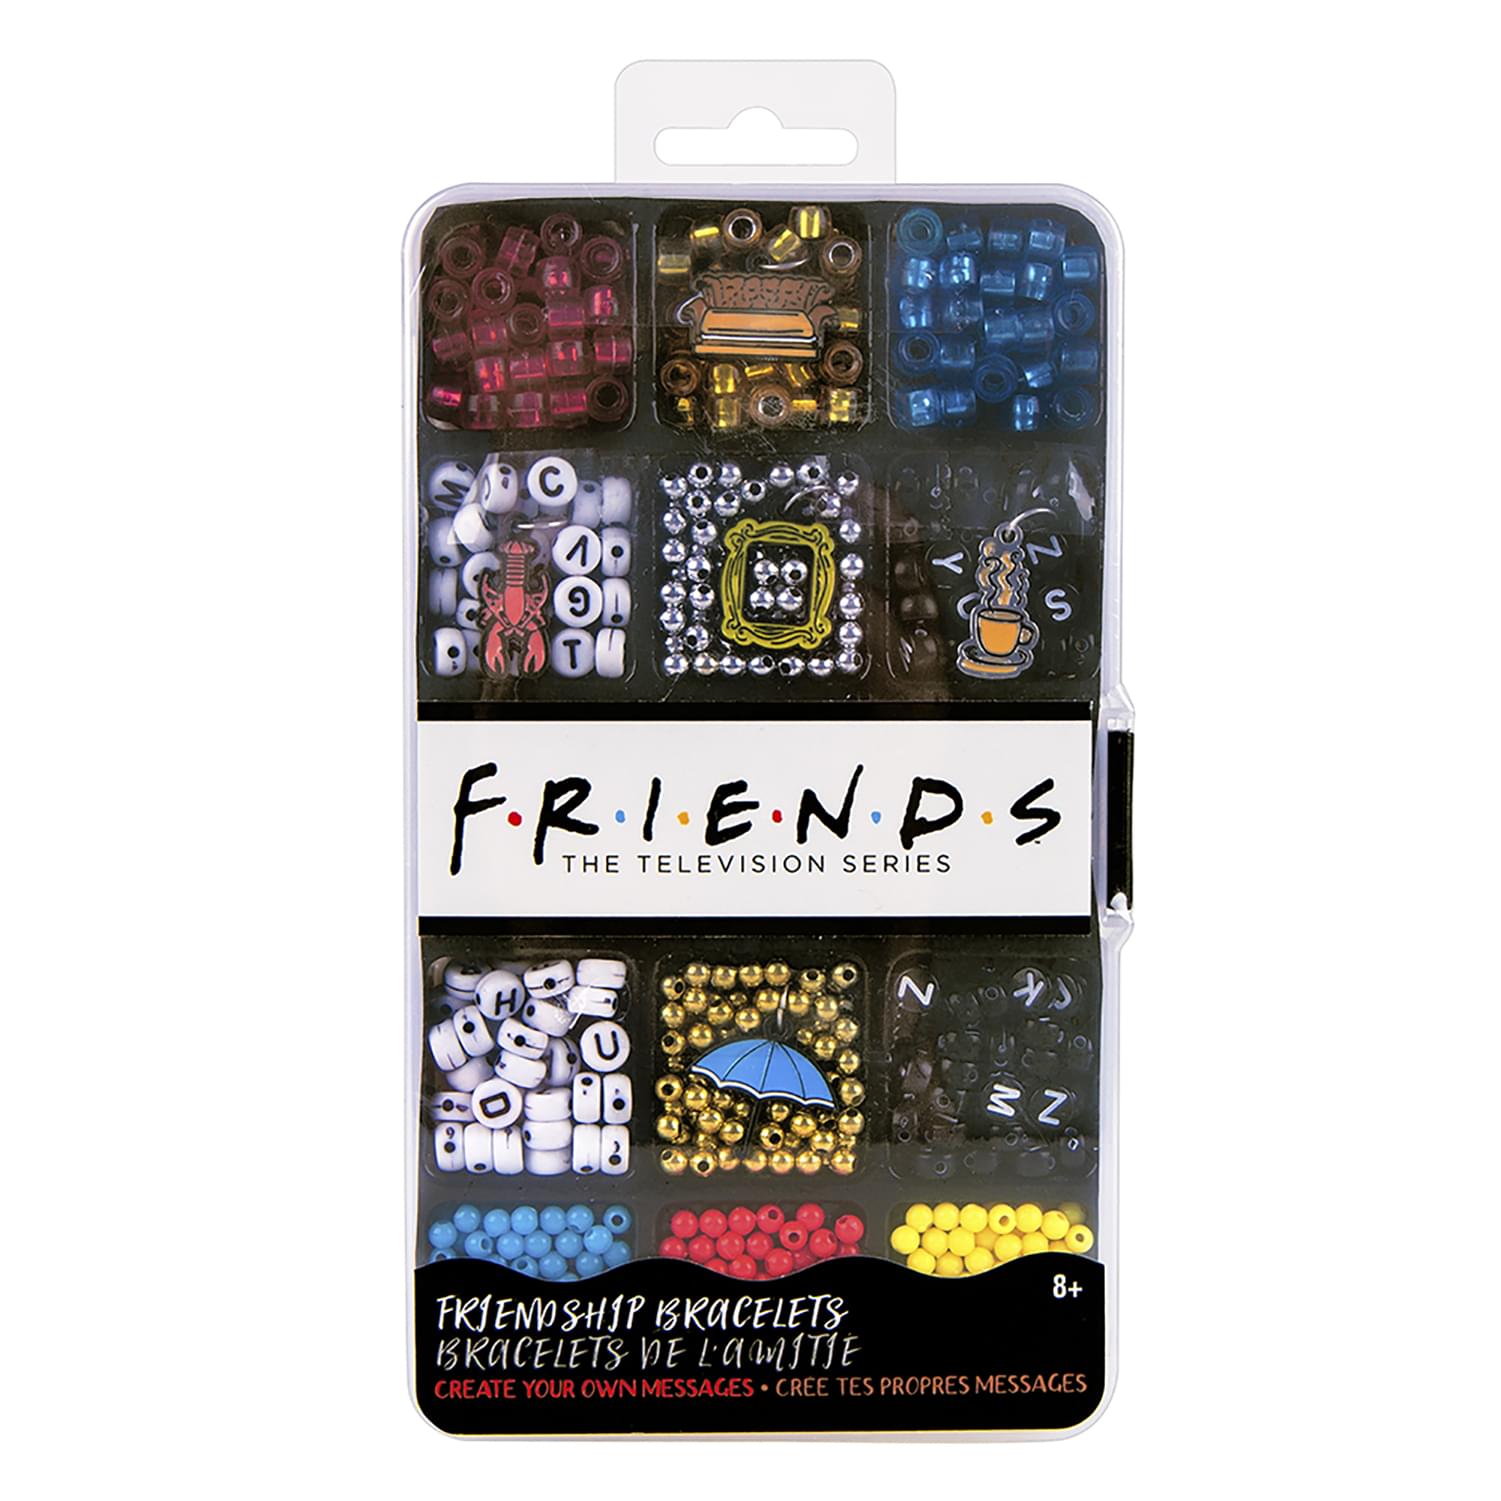 FRIENDS Friendship Bracelet Making Kit